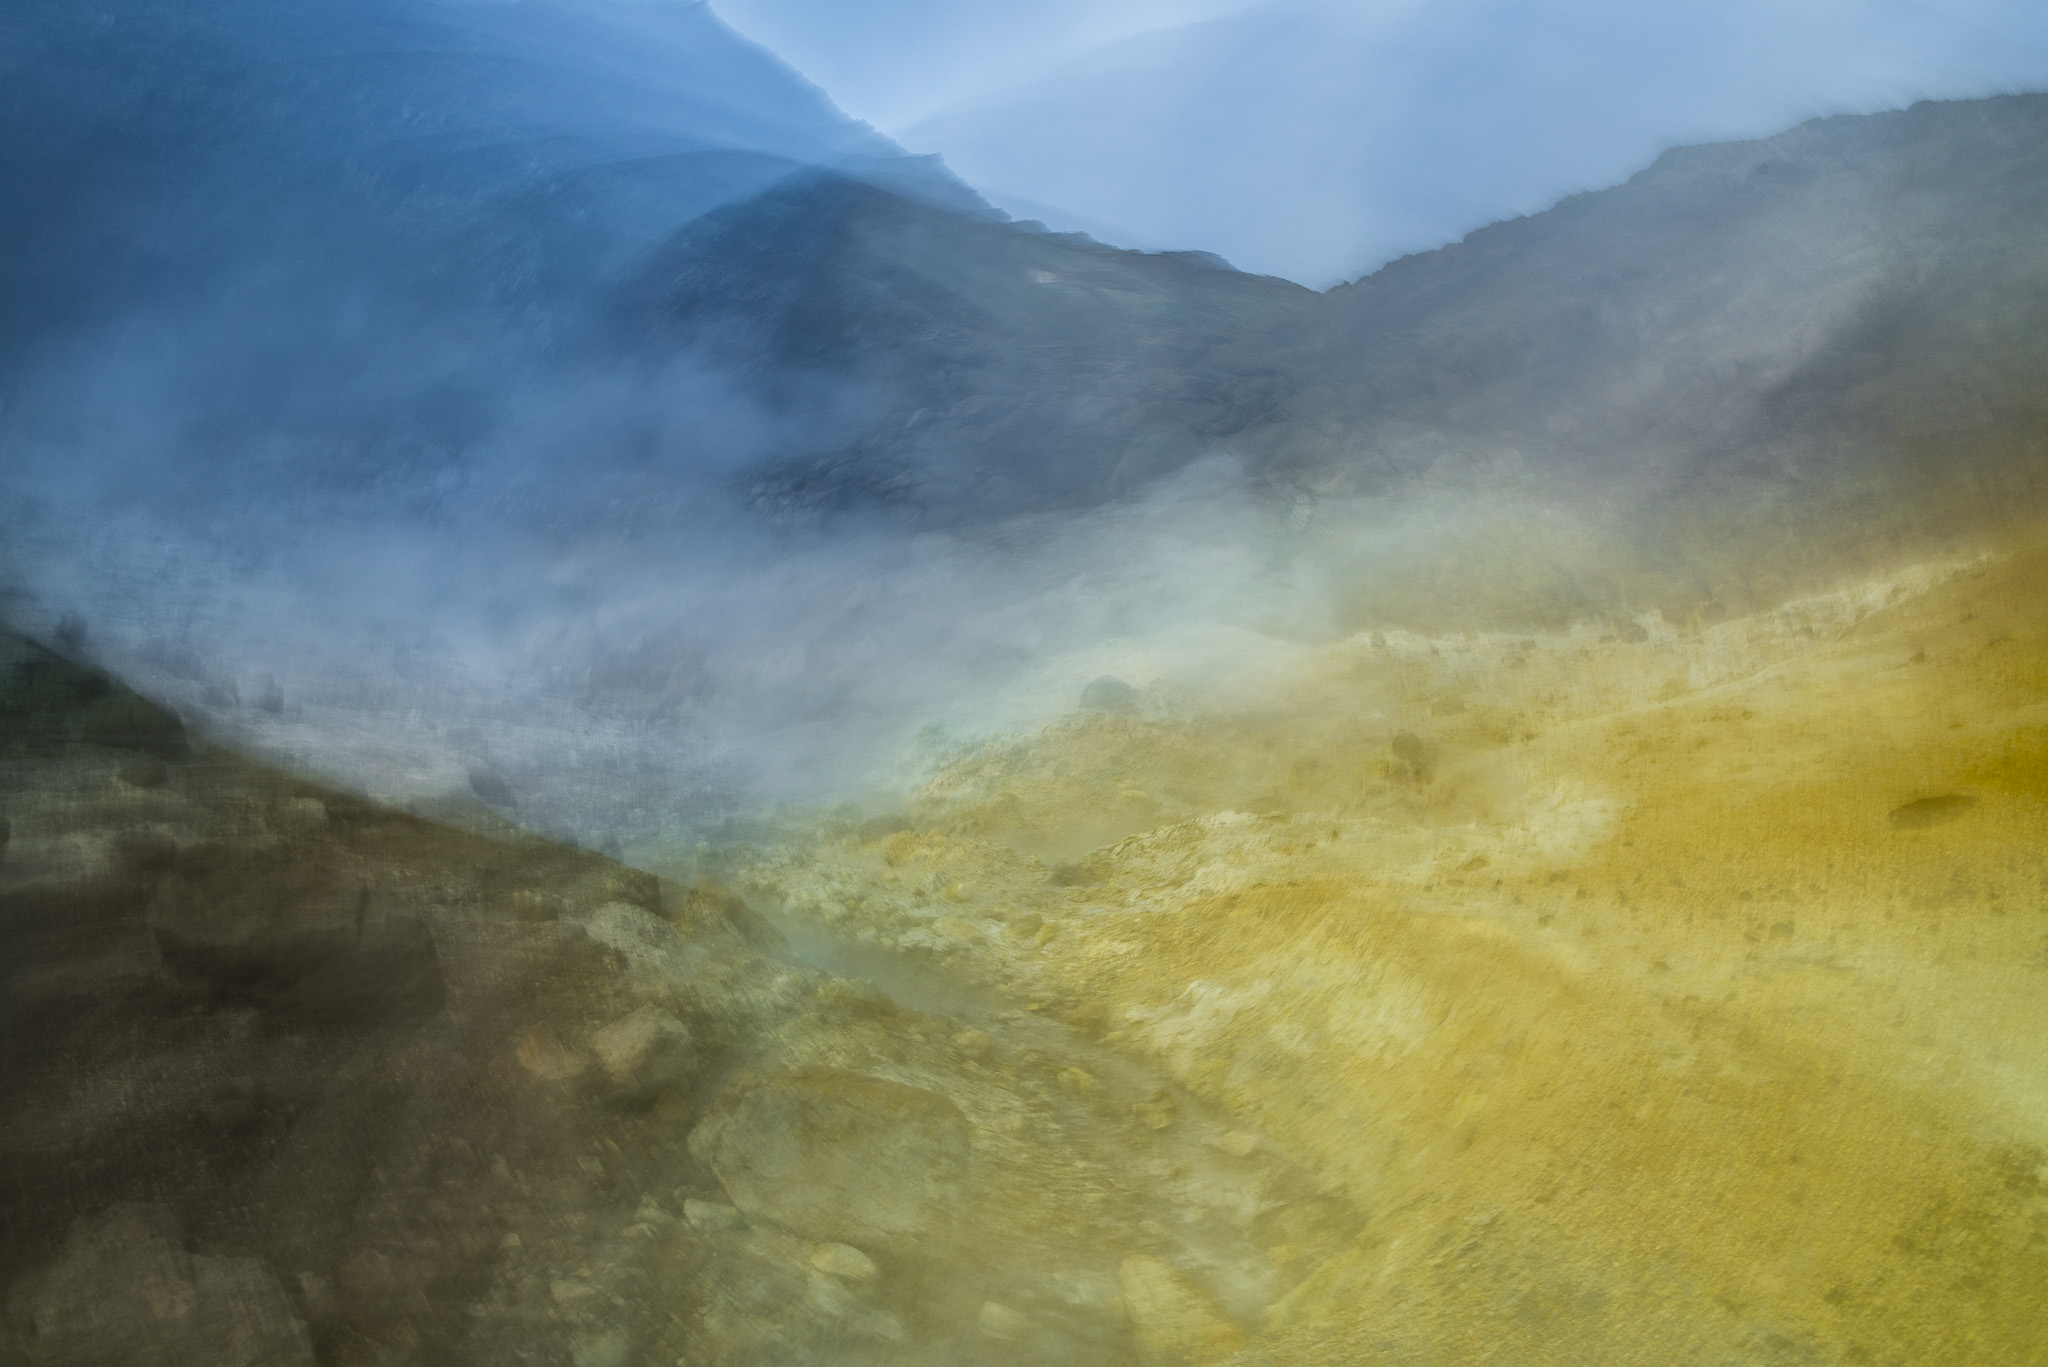 Abstraktes Bild aus Island, Landschaft einer Farbbalance aus Gelb, Blau und Braun, Schwefel und Himmel.